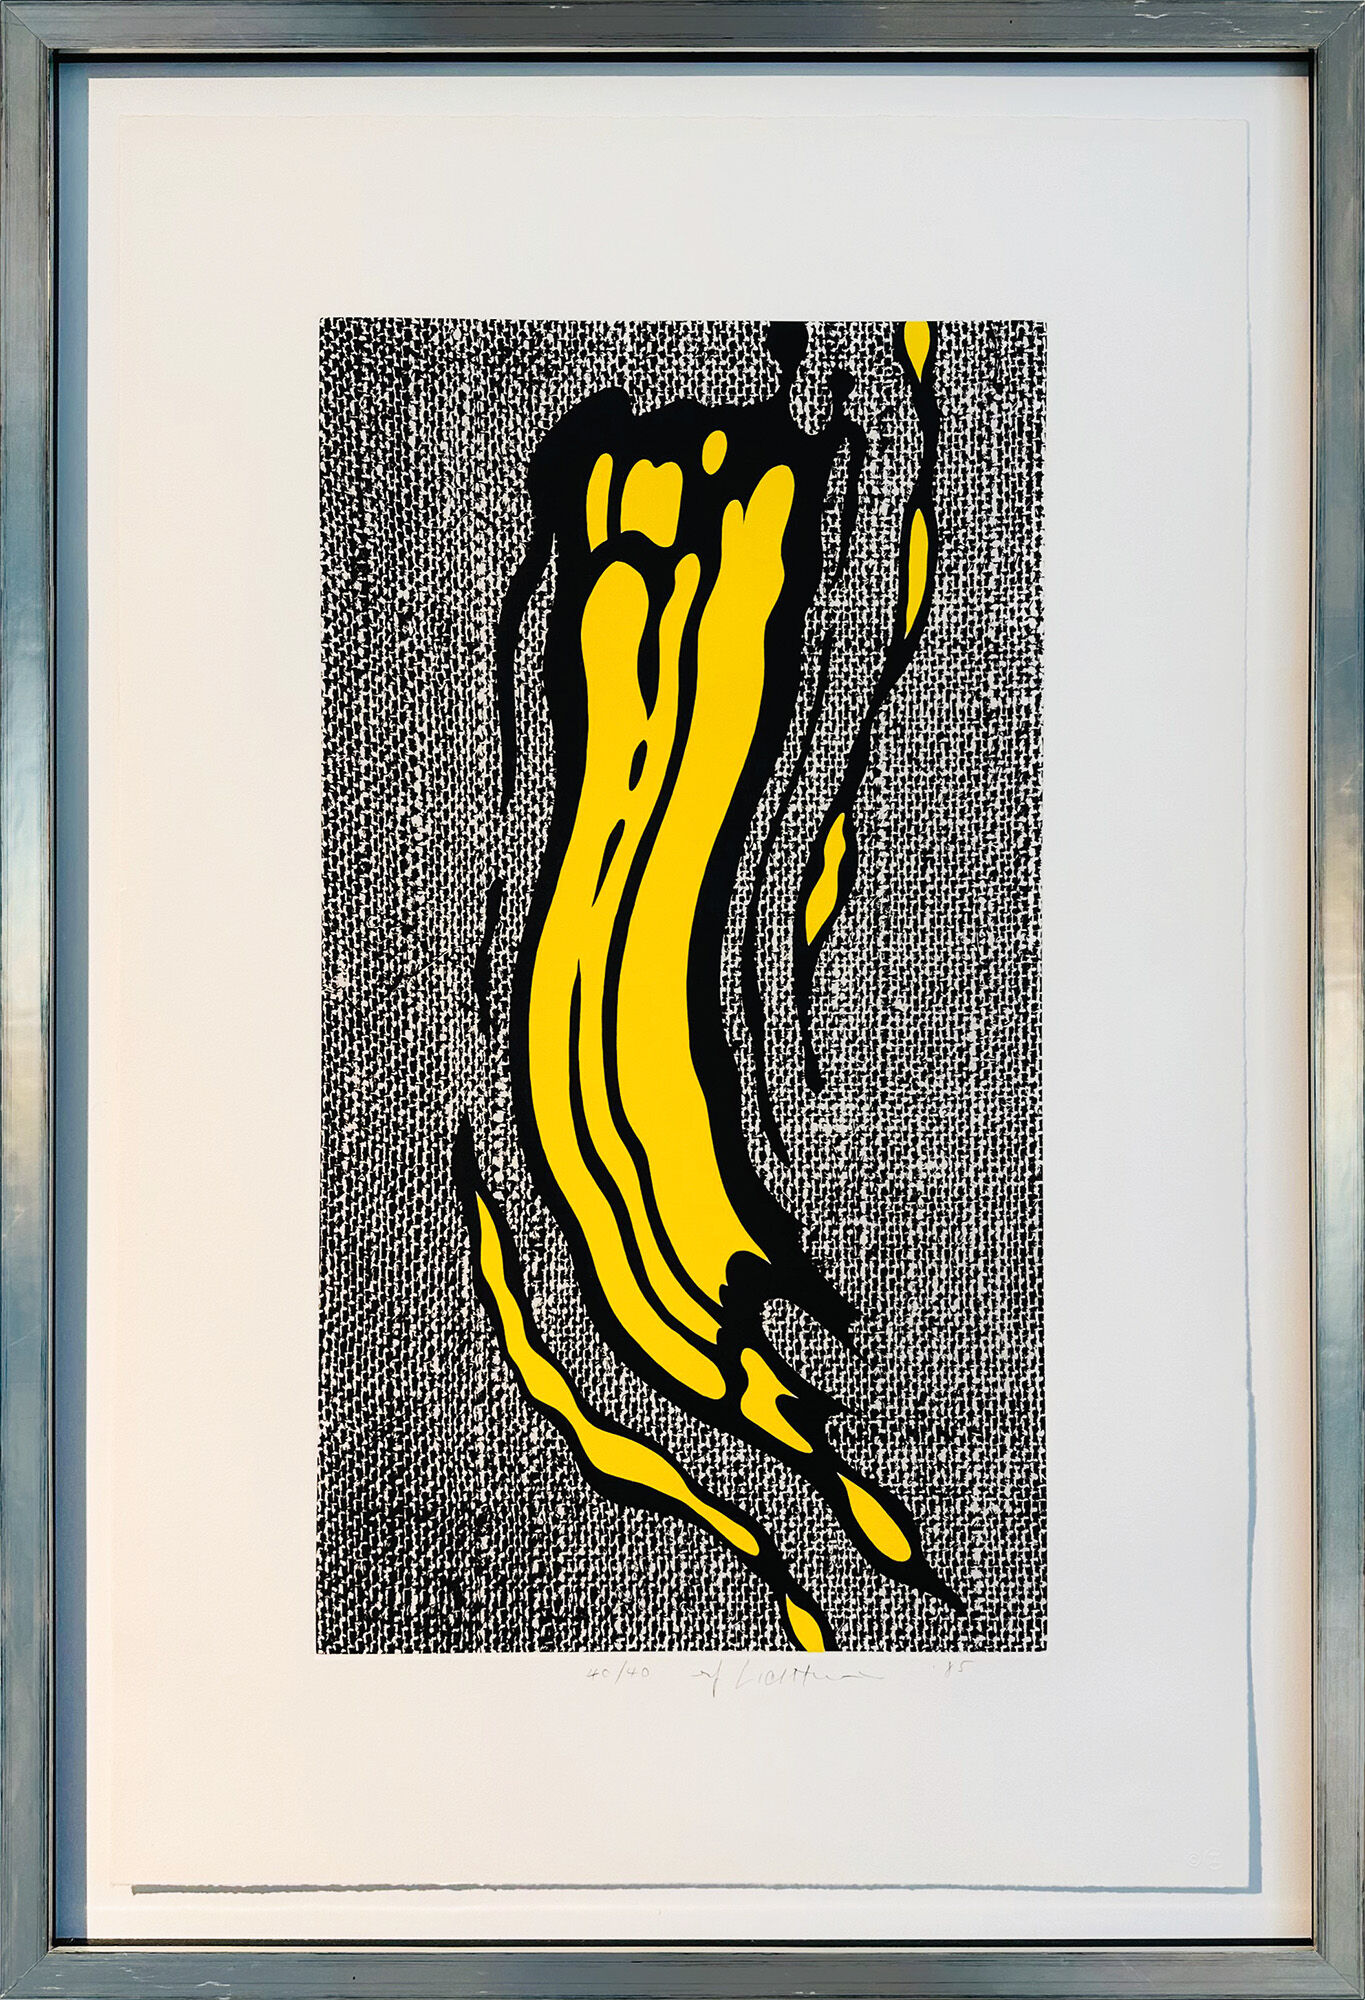 Picture "Yellow Brushstroke" (1985) by Roy Lichtenstein